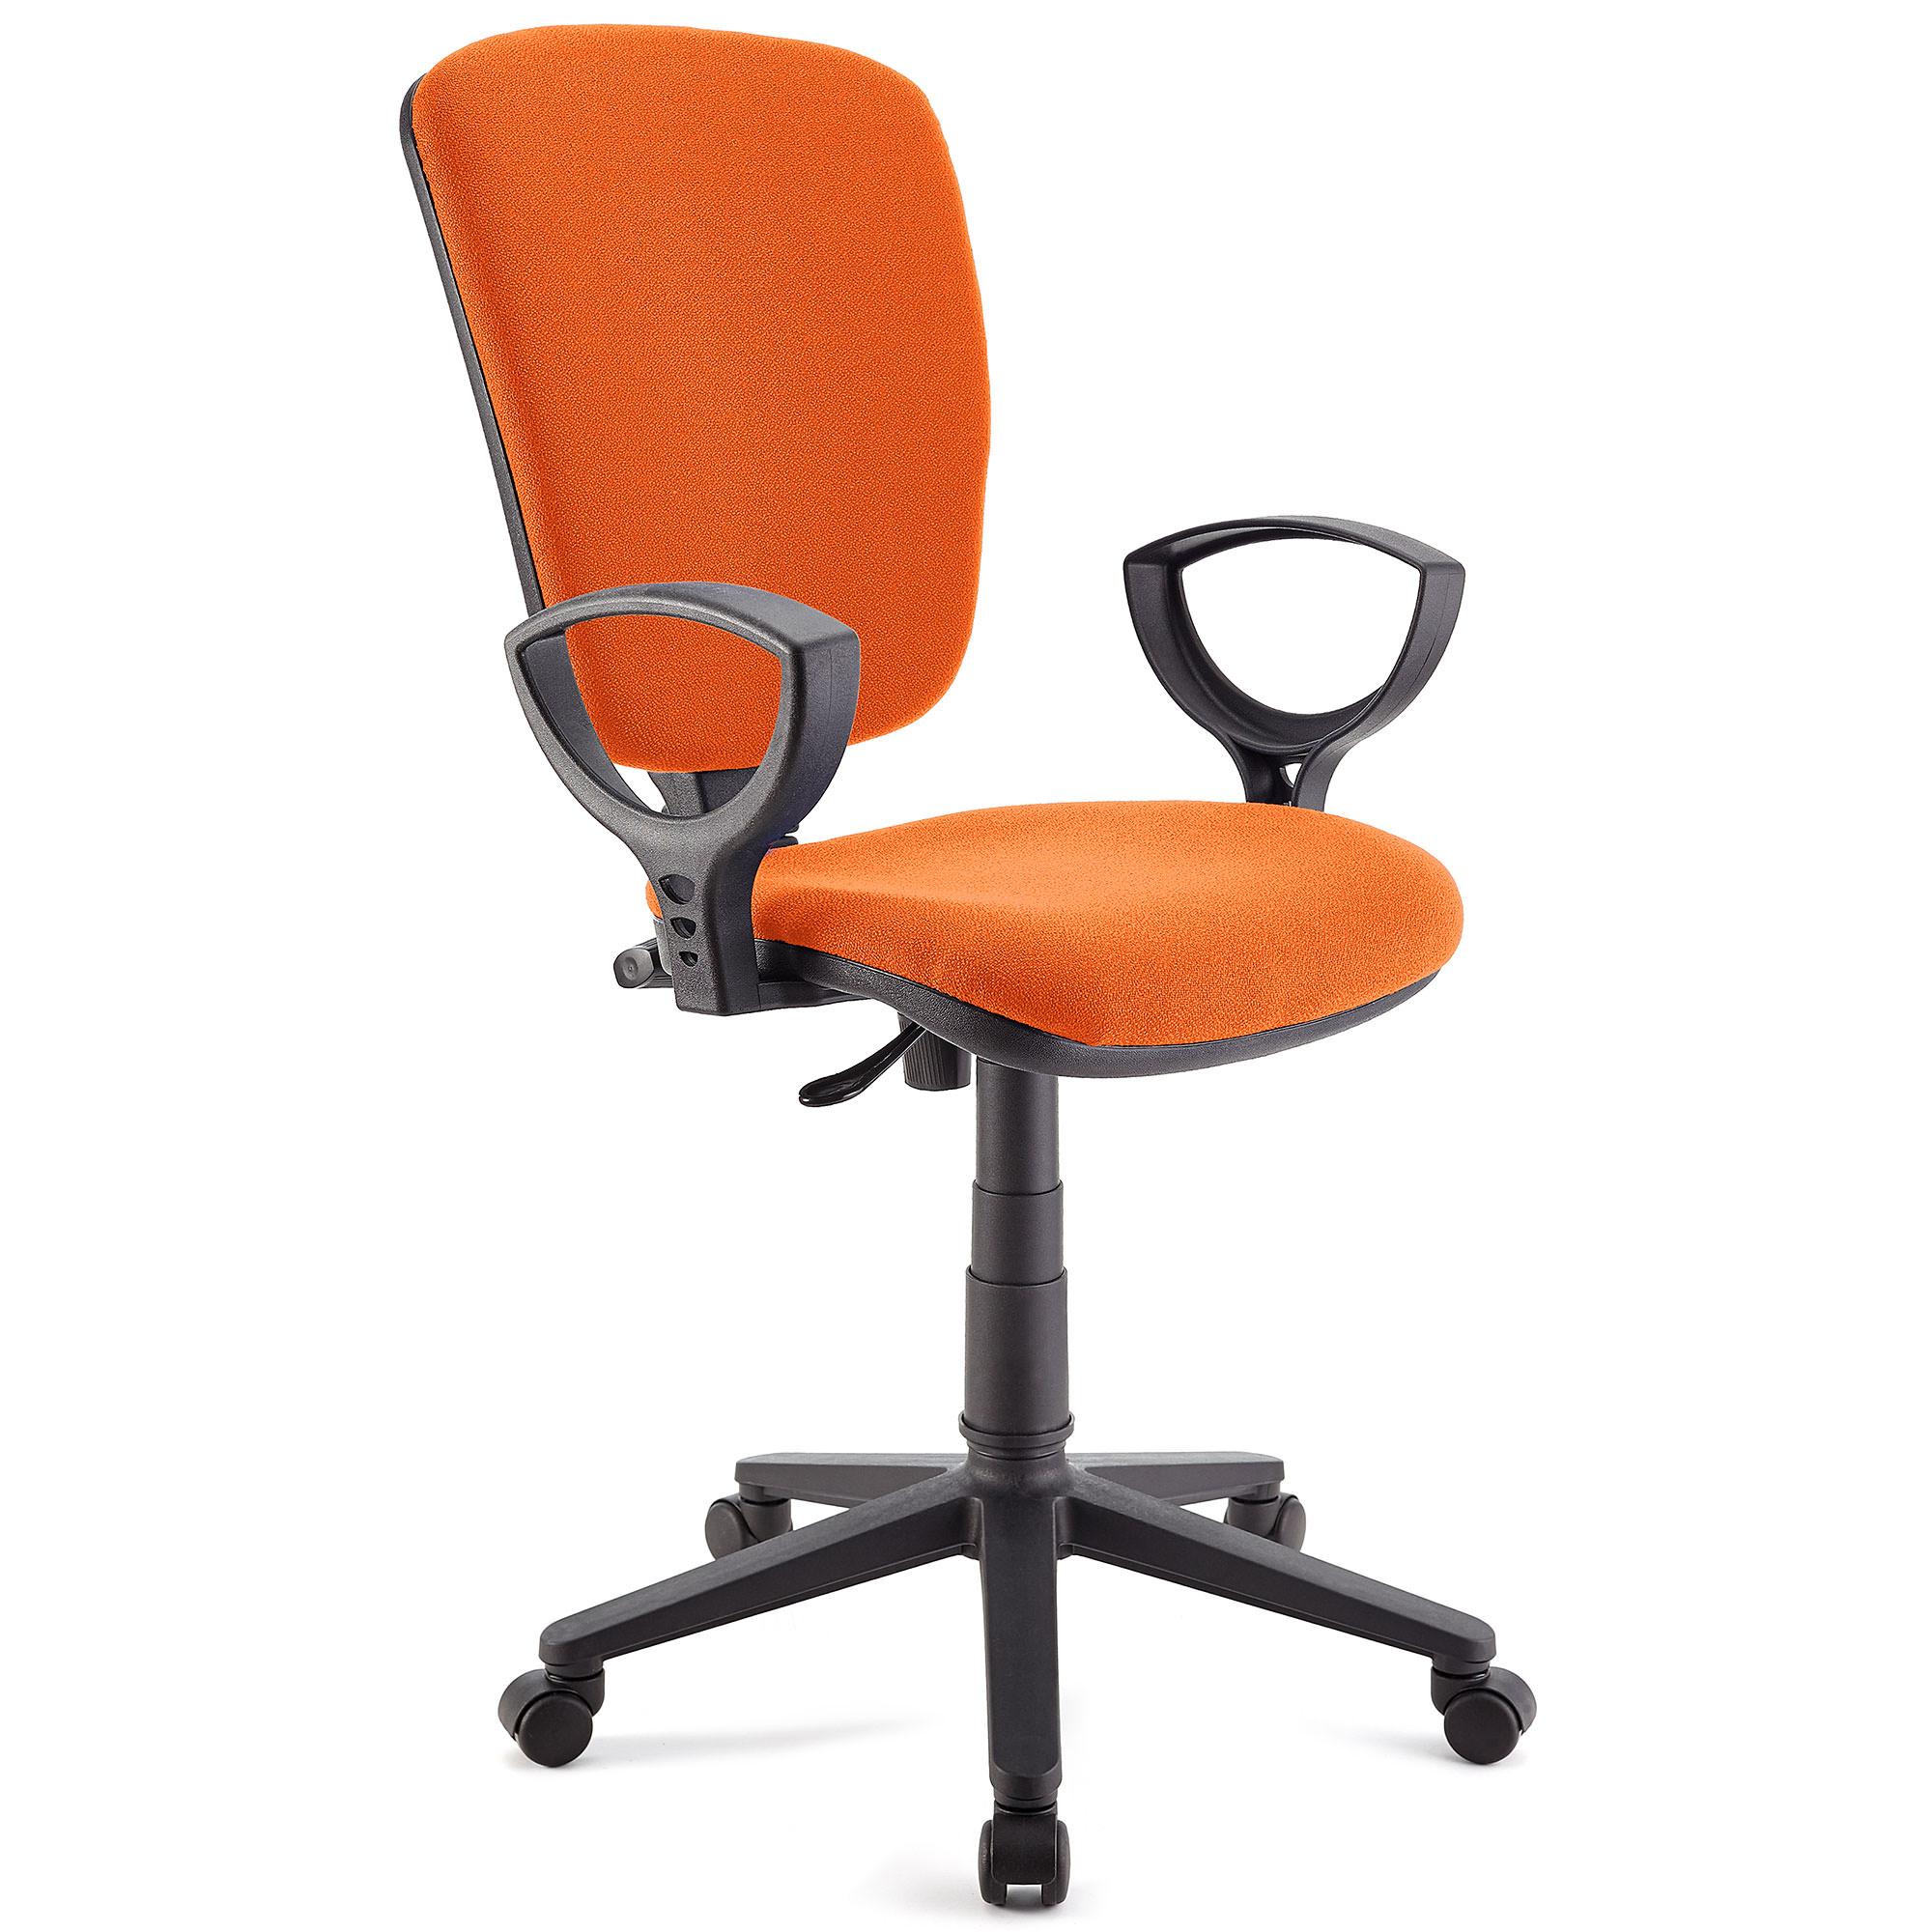 Drehstuhl KALIPSO, verstellbare Rückenlehne, widerstandsfähiger Stoffbezug, Farbe Orange